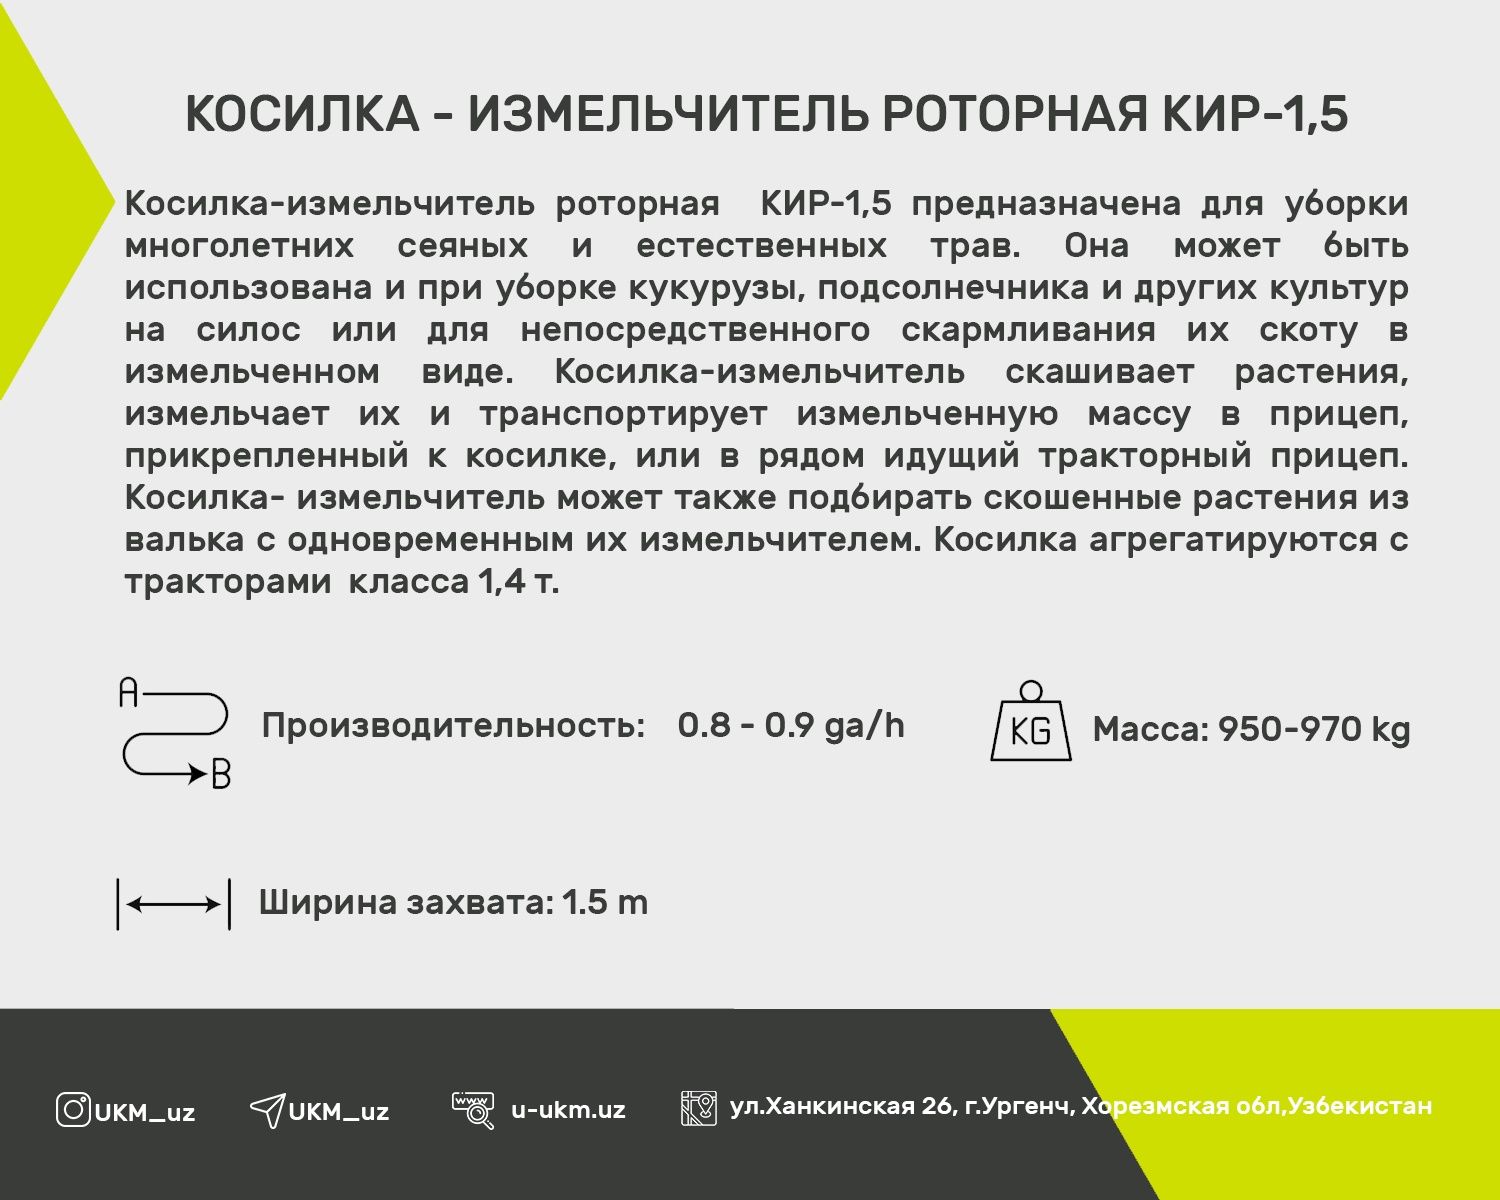 КИР 1,5-Косилка-Измельчитель Роторная производство Узбекистана